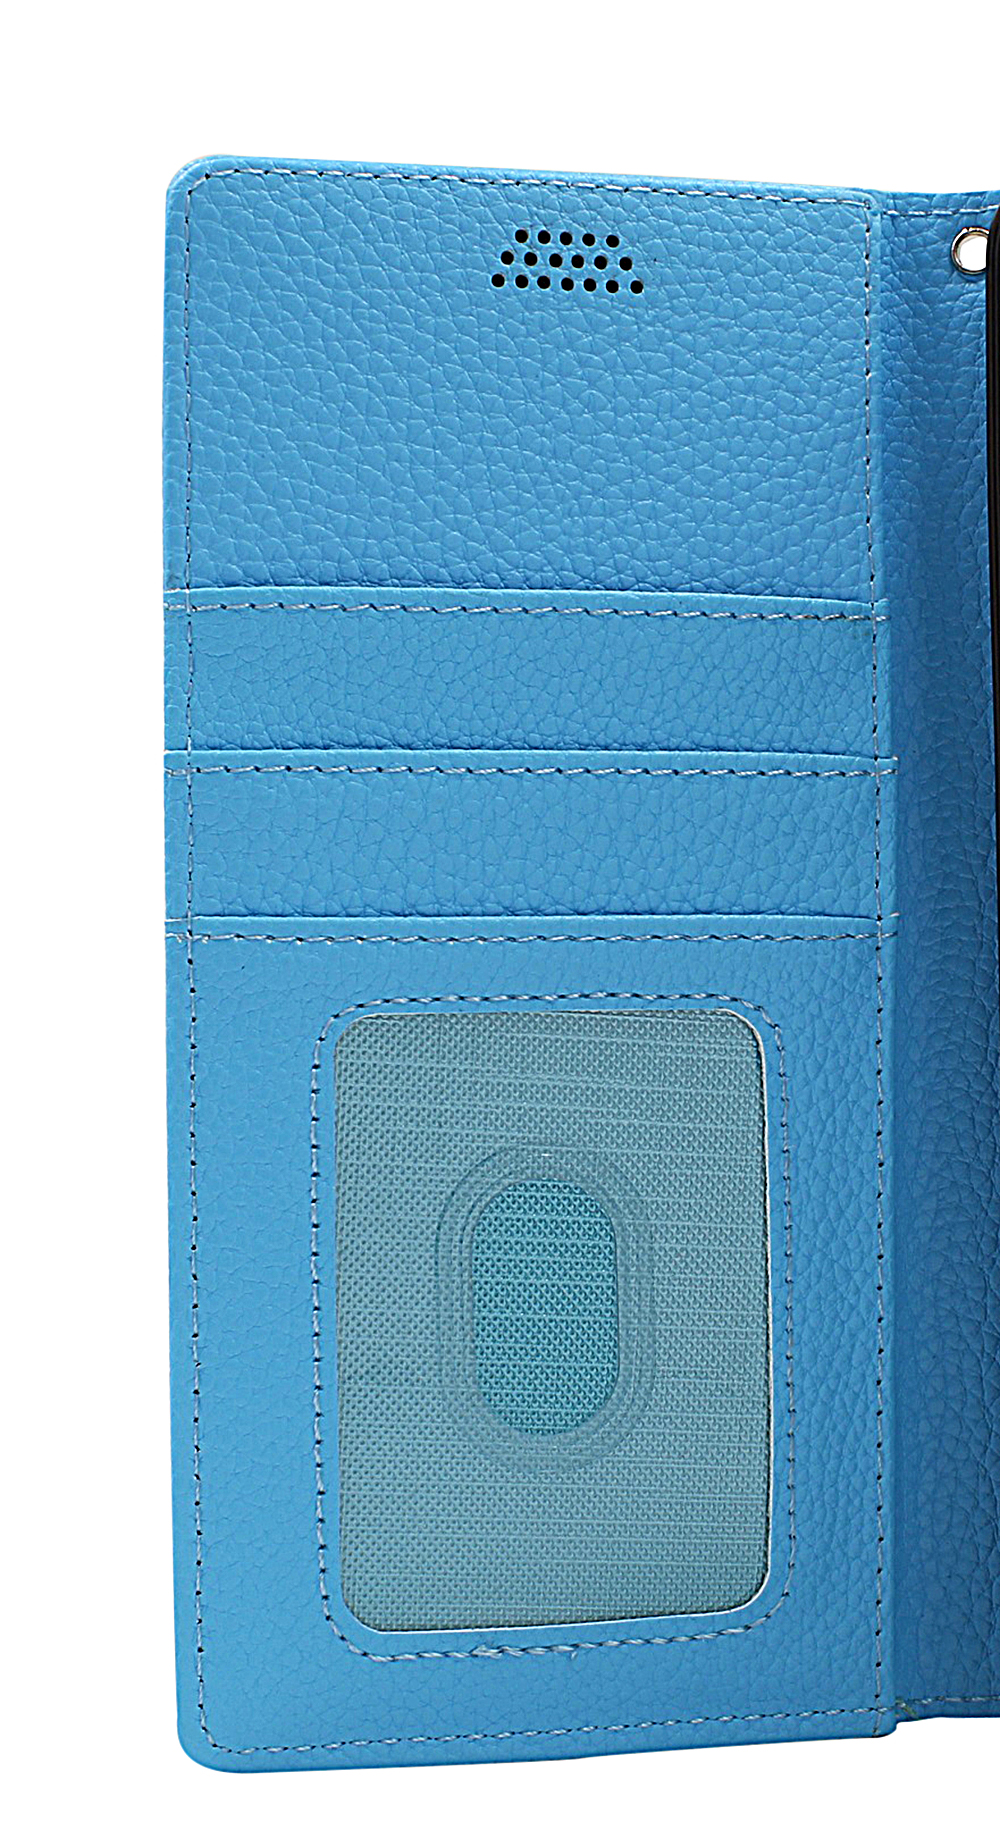 New Standcase Wallet Motorola Moto G50